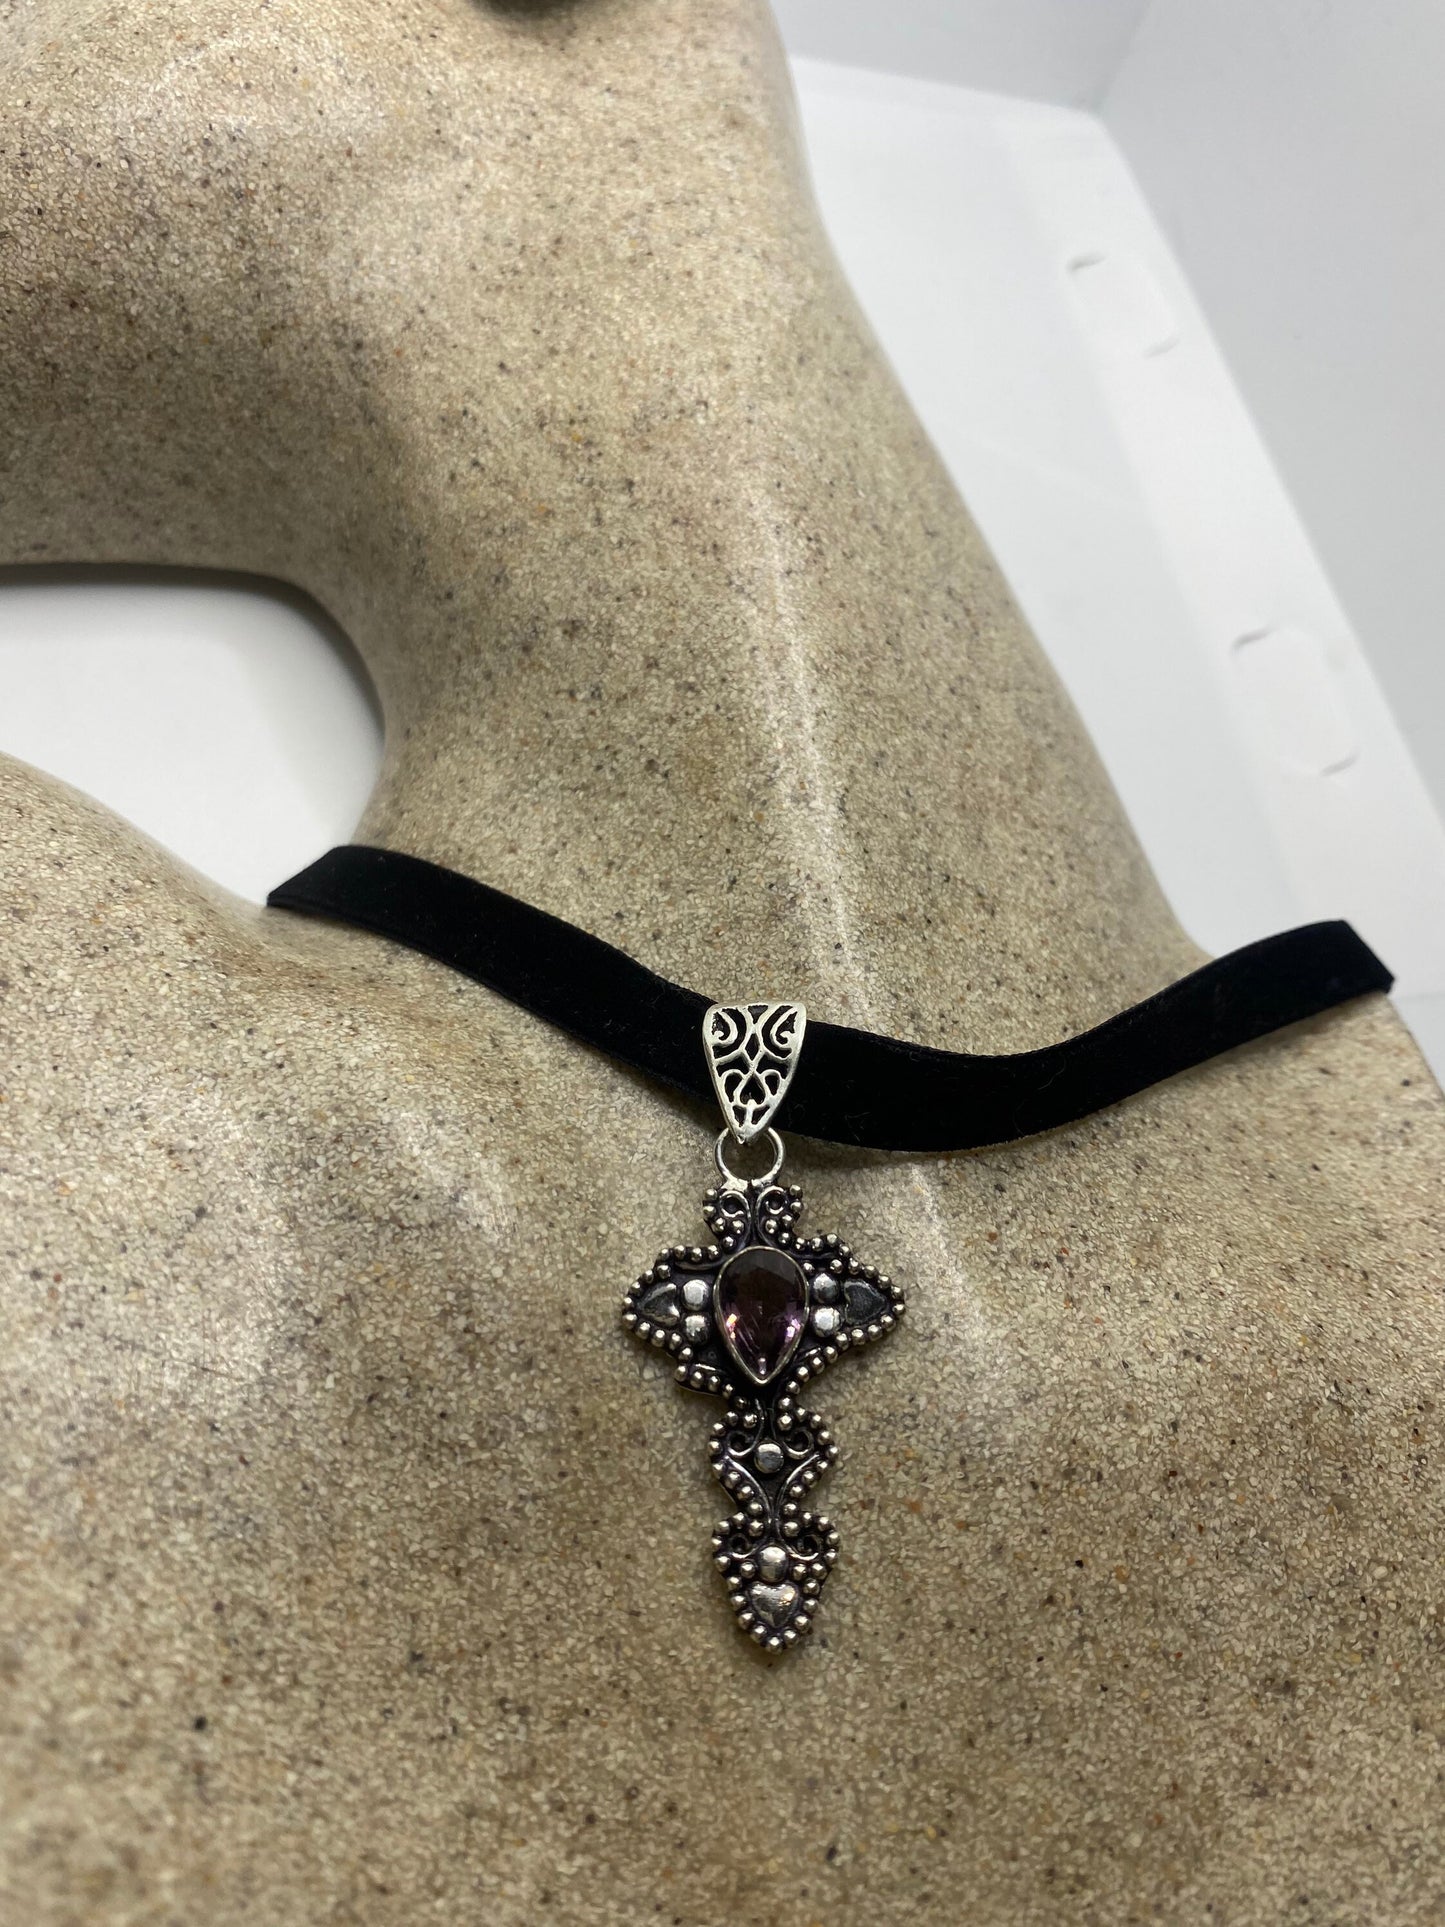 Vintage Purple Amethyst Cross Choker Black Velvet Ribbon Pendant